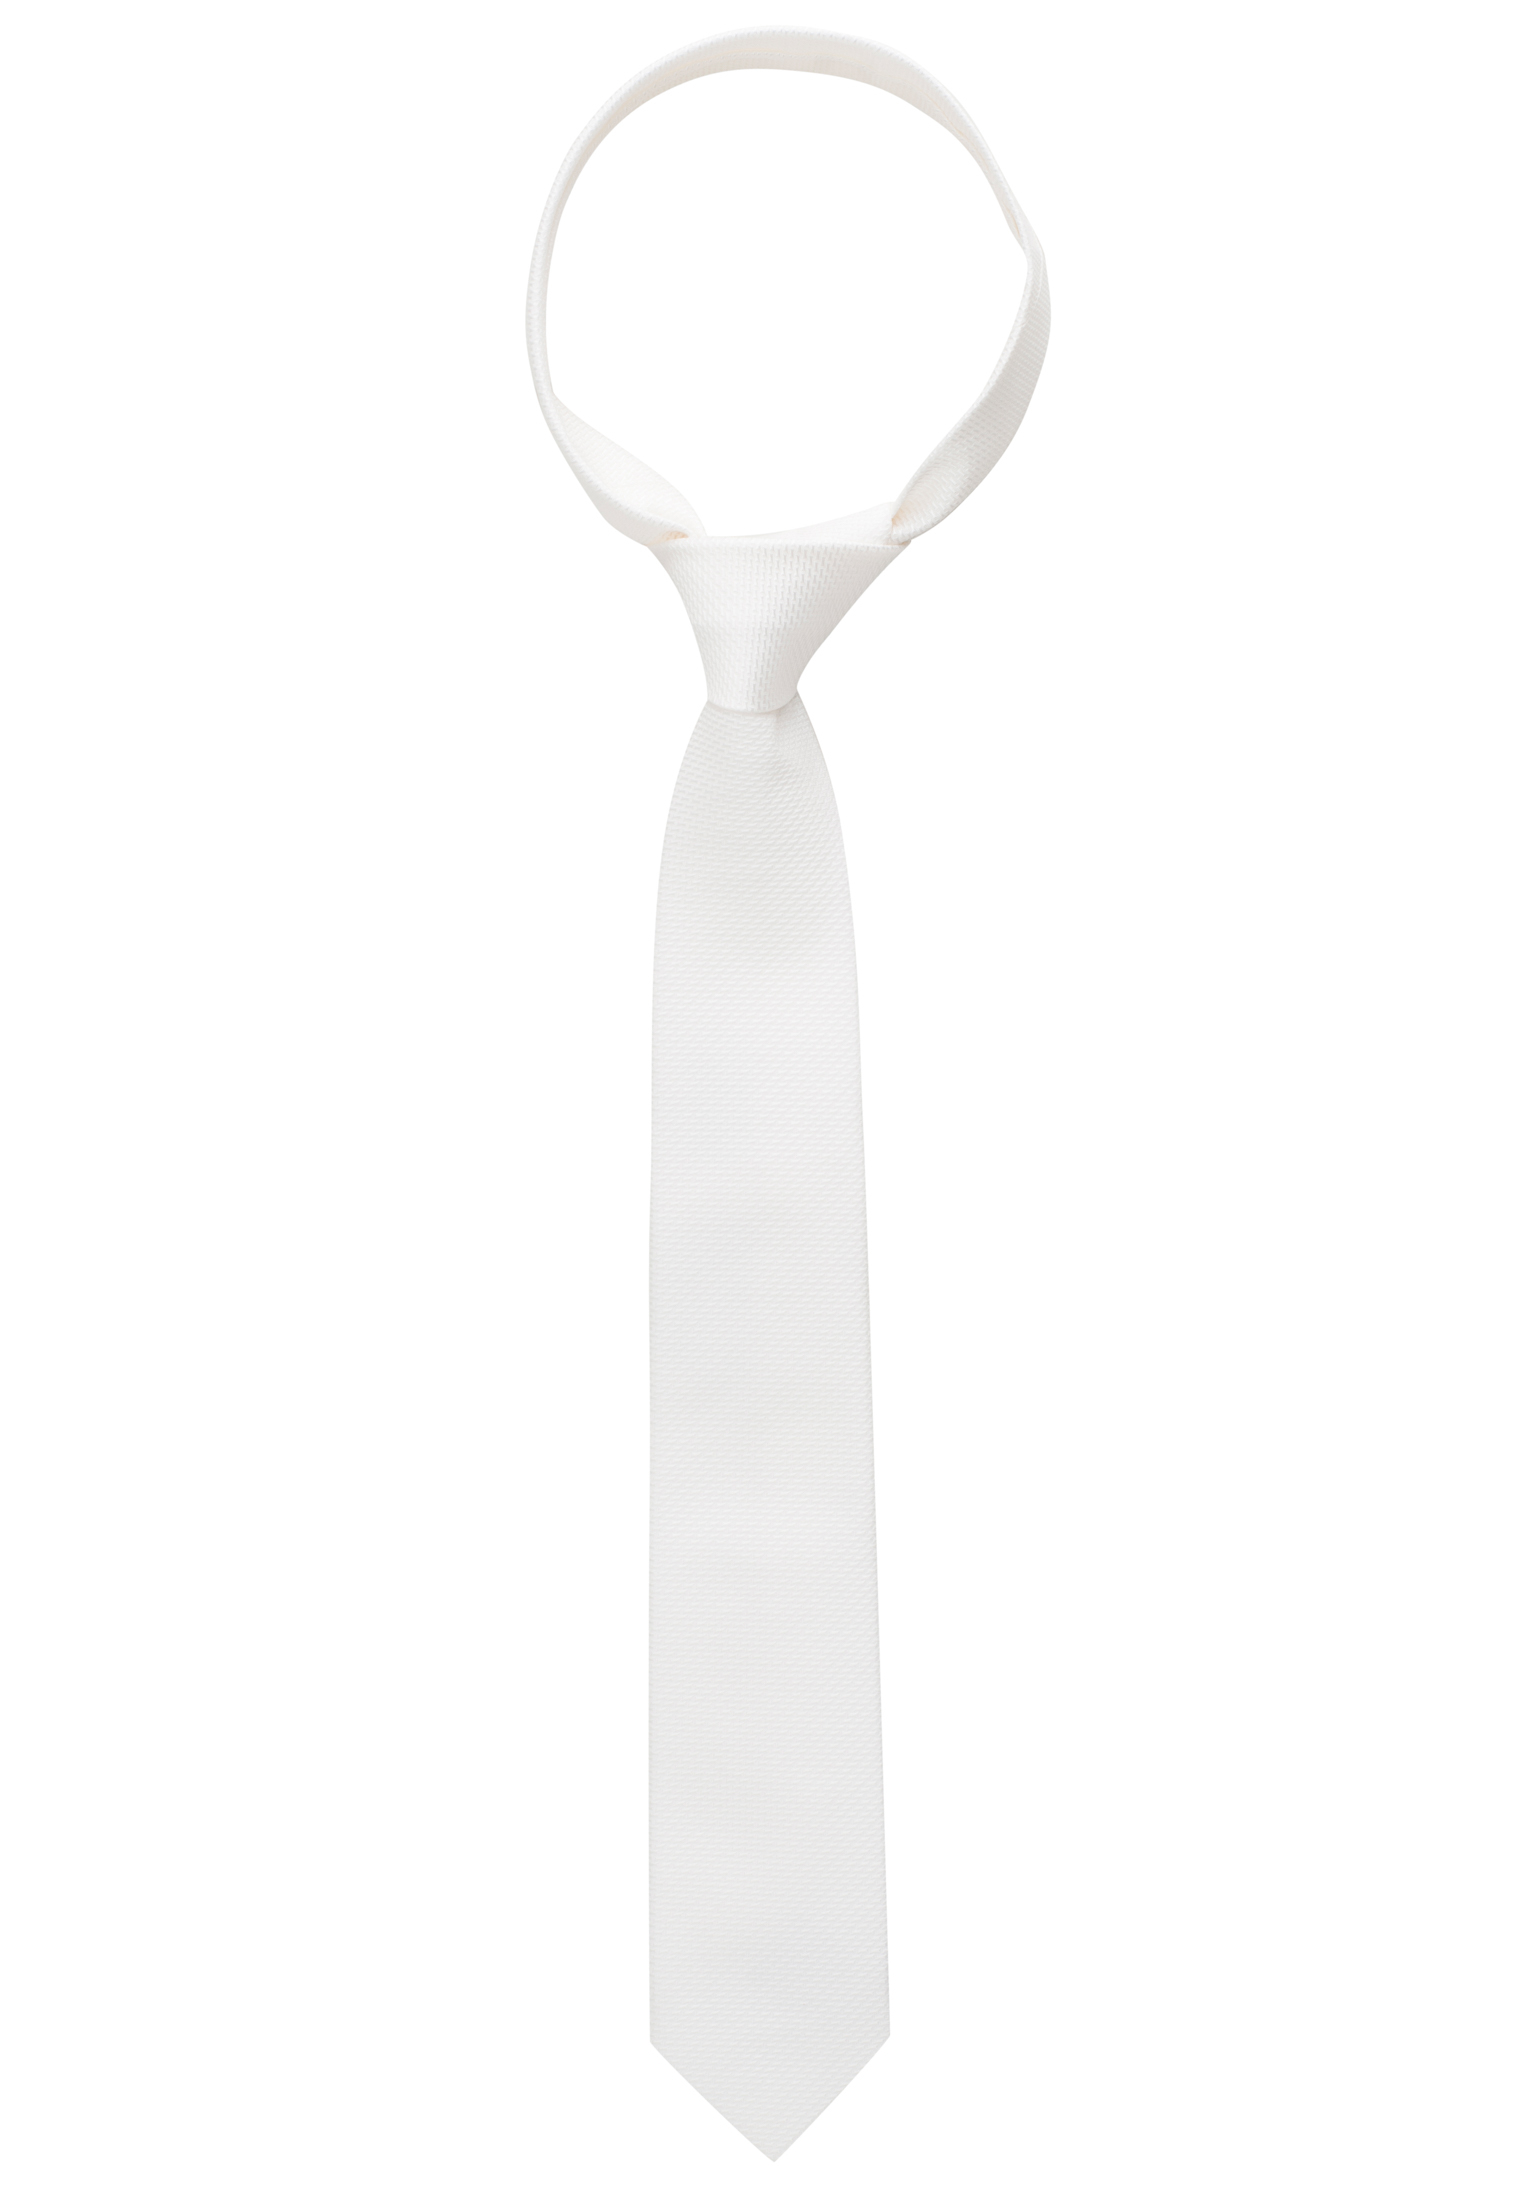 Krawatte in weiß strukturiert | 1AC01872-00-01-142 | 142 weiß 